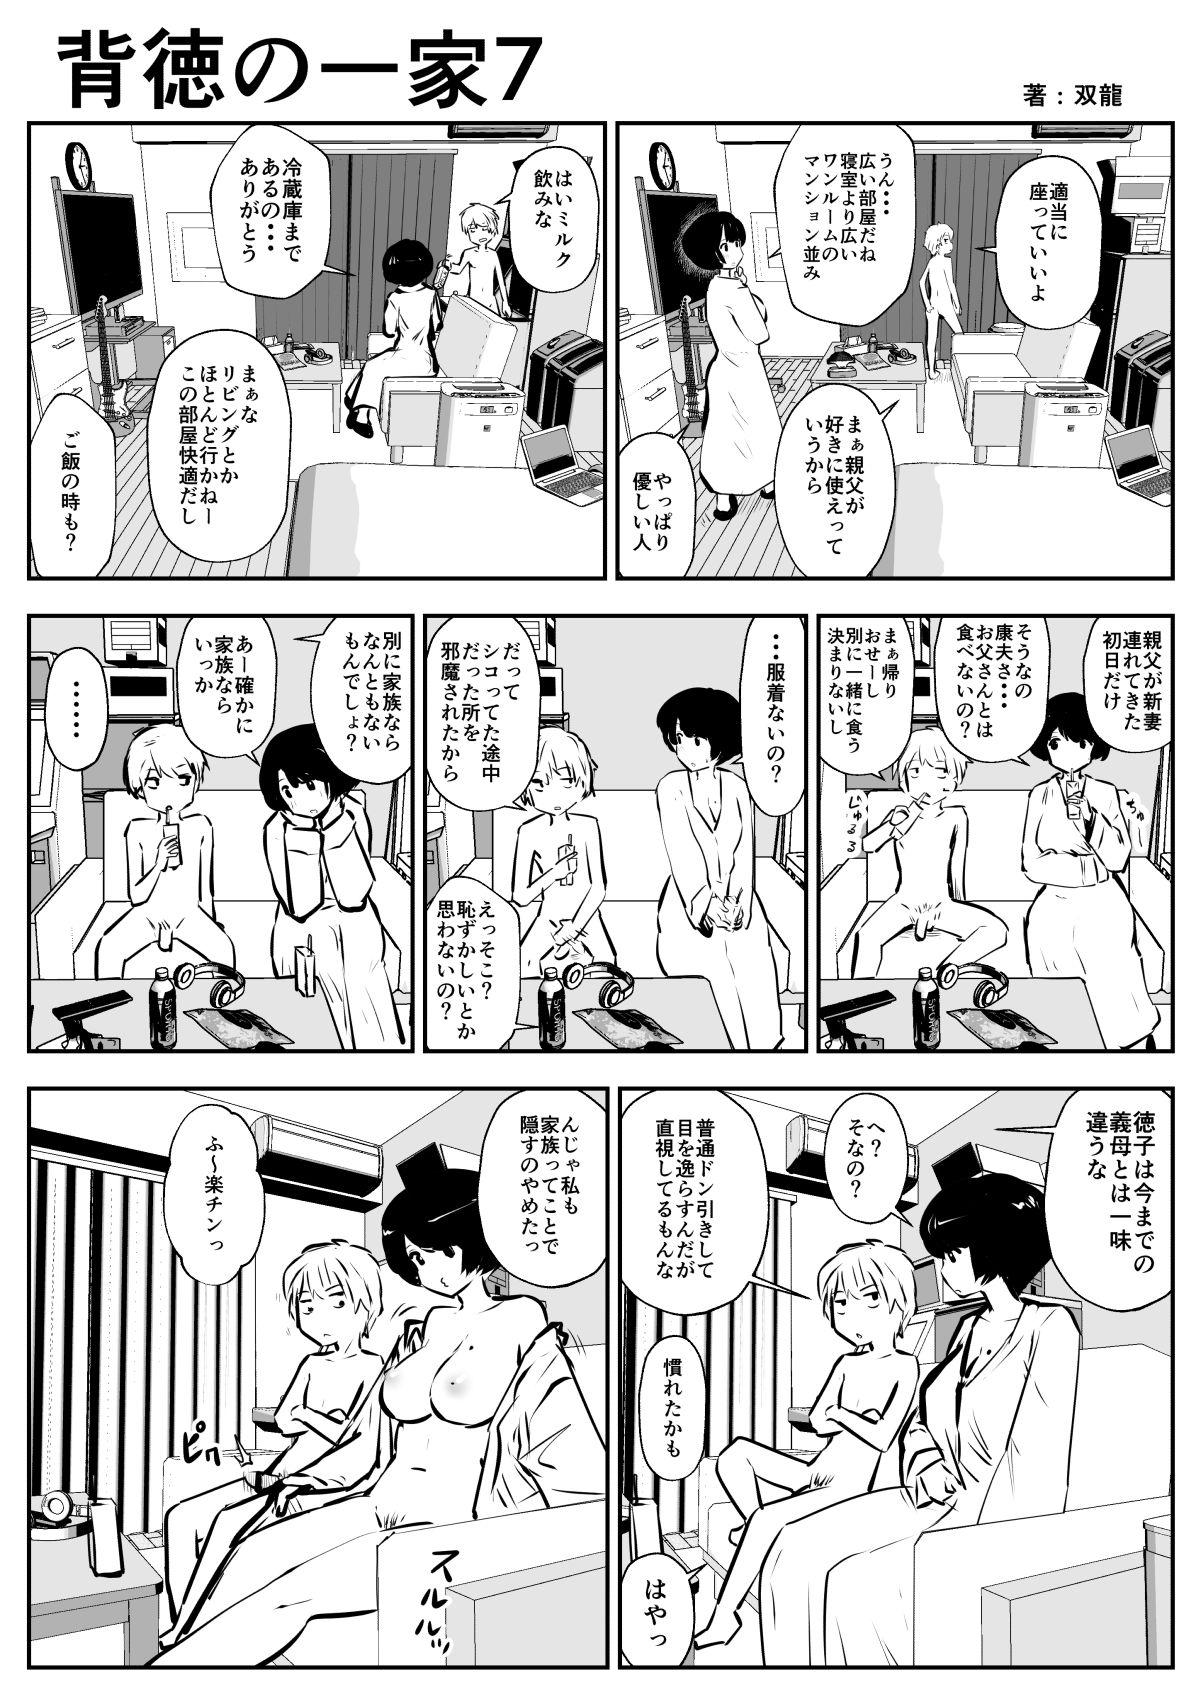 Homemade Haitoku no Ikka - Original Vergon - Page 7